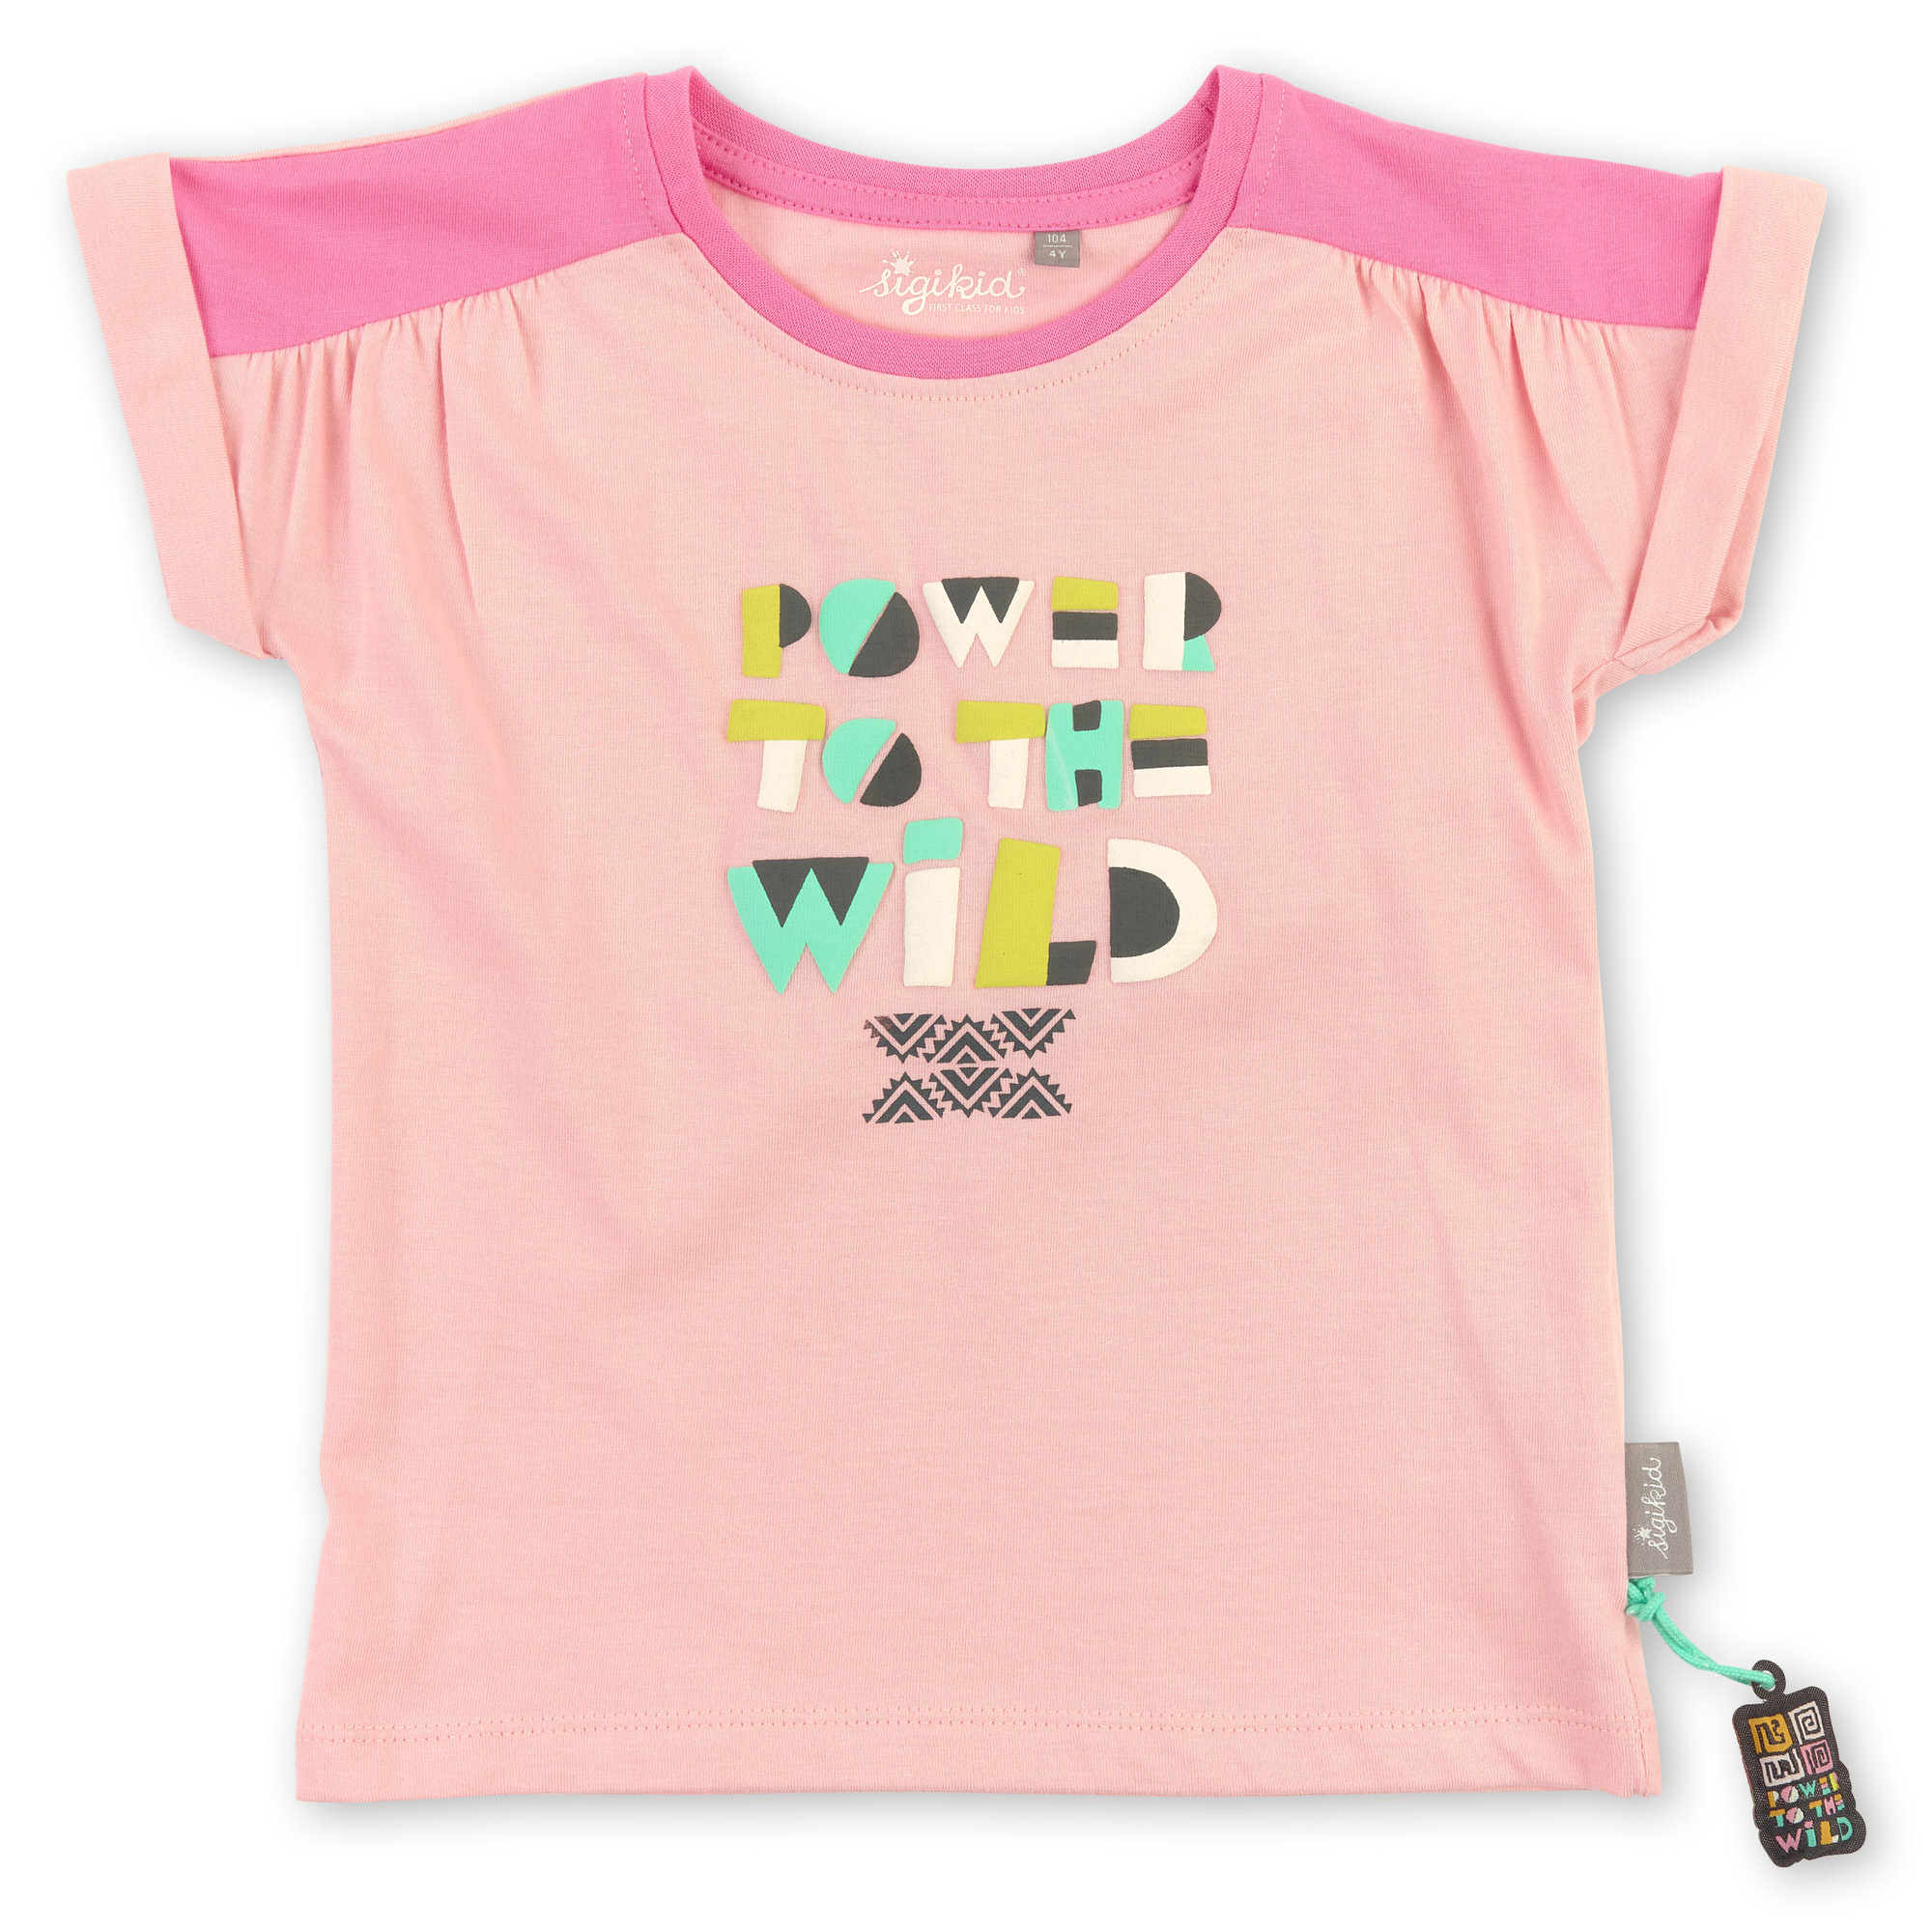 Rosa Mädchen T-Shirt